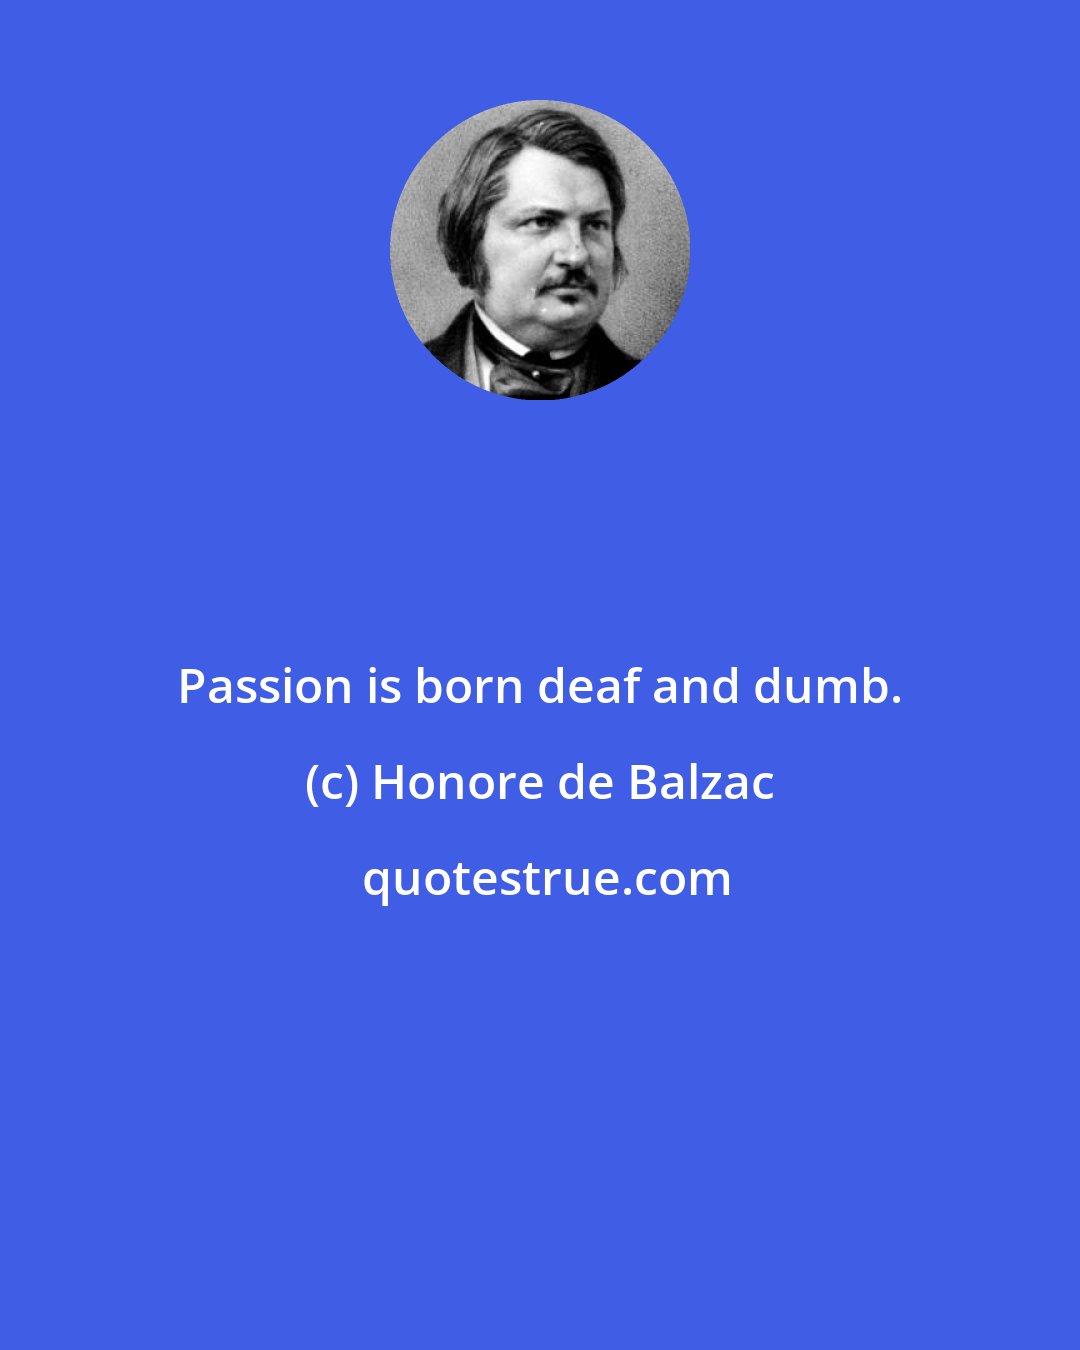 Honore de Balzac: Passion is born deaf and dumb.